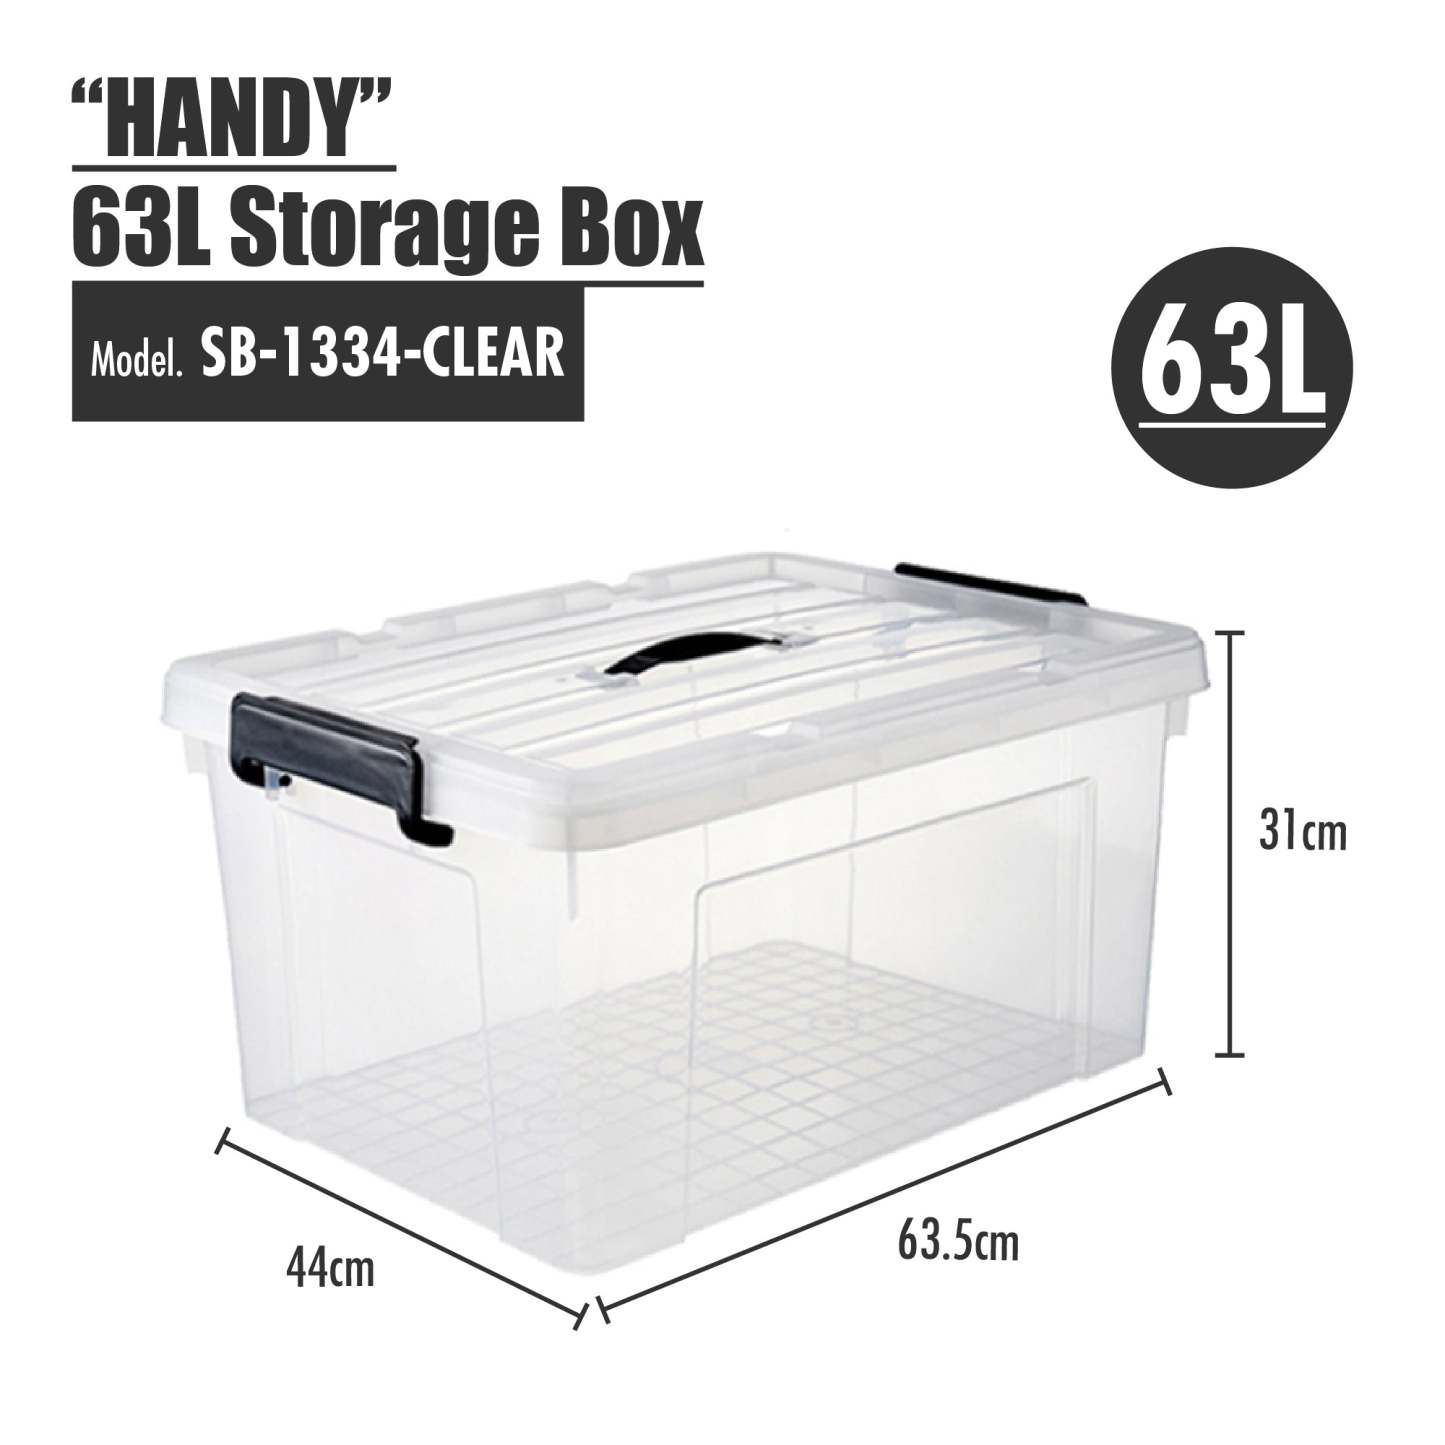 HOUZE - 'HANDY' Handheld 20L/33L/47L/63L Storage Box (Clear)